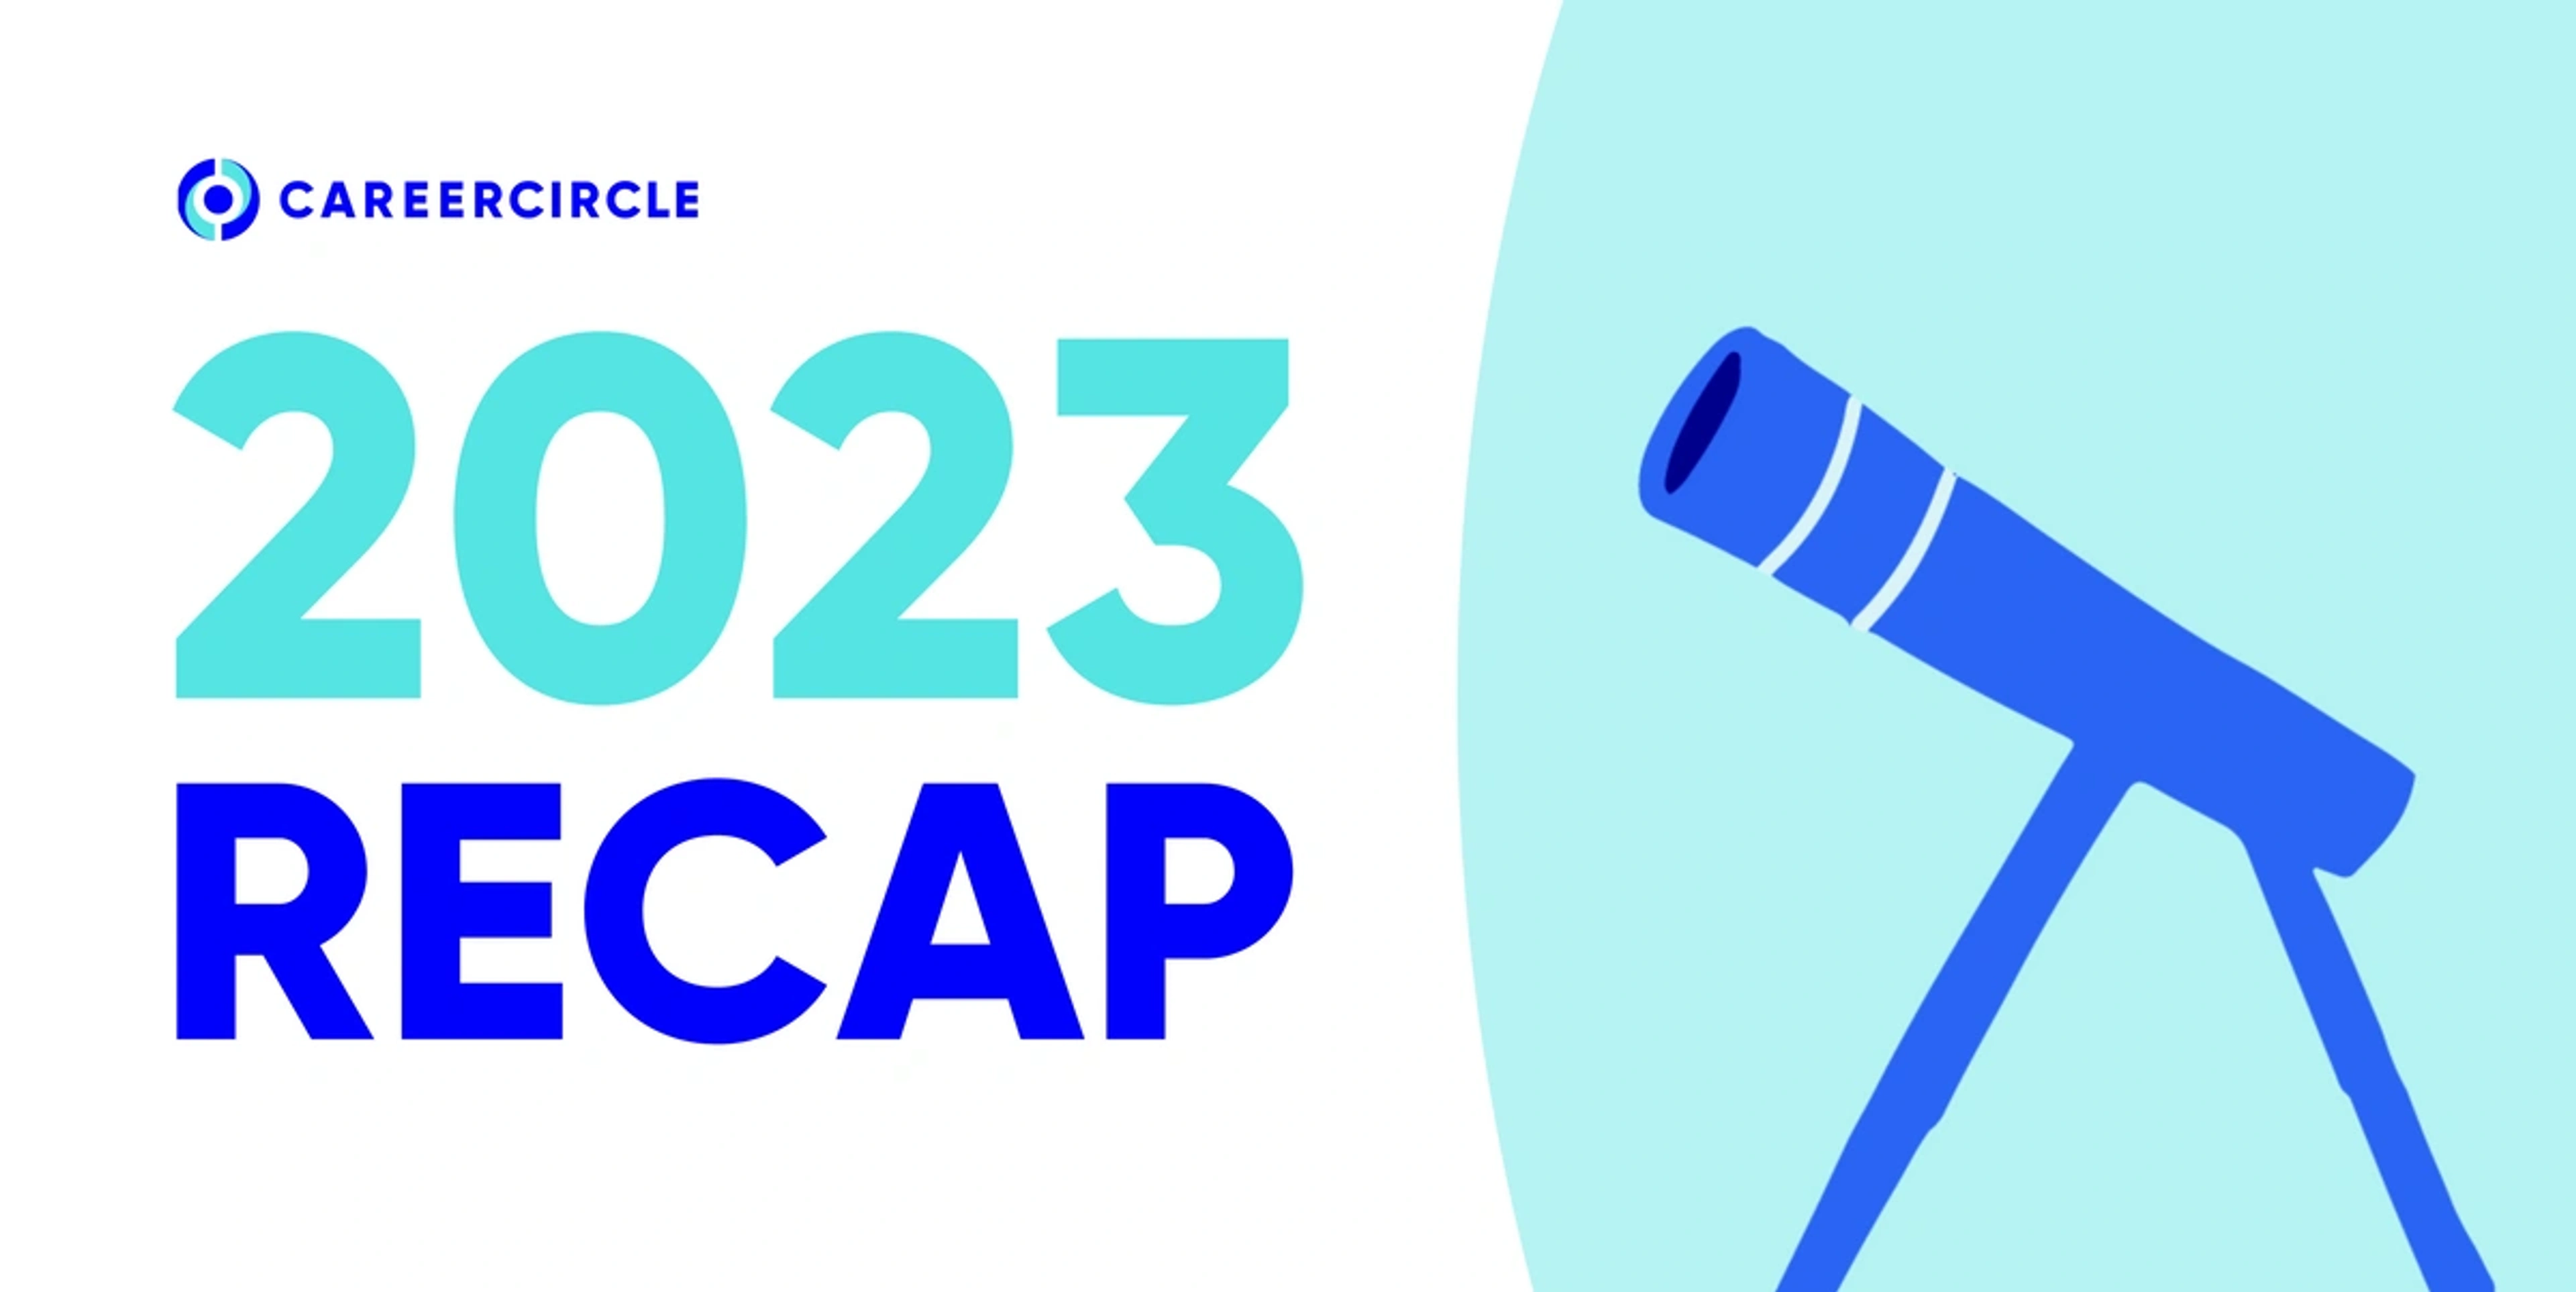 telescope image, 2023 recap text, career circle logo